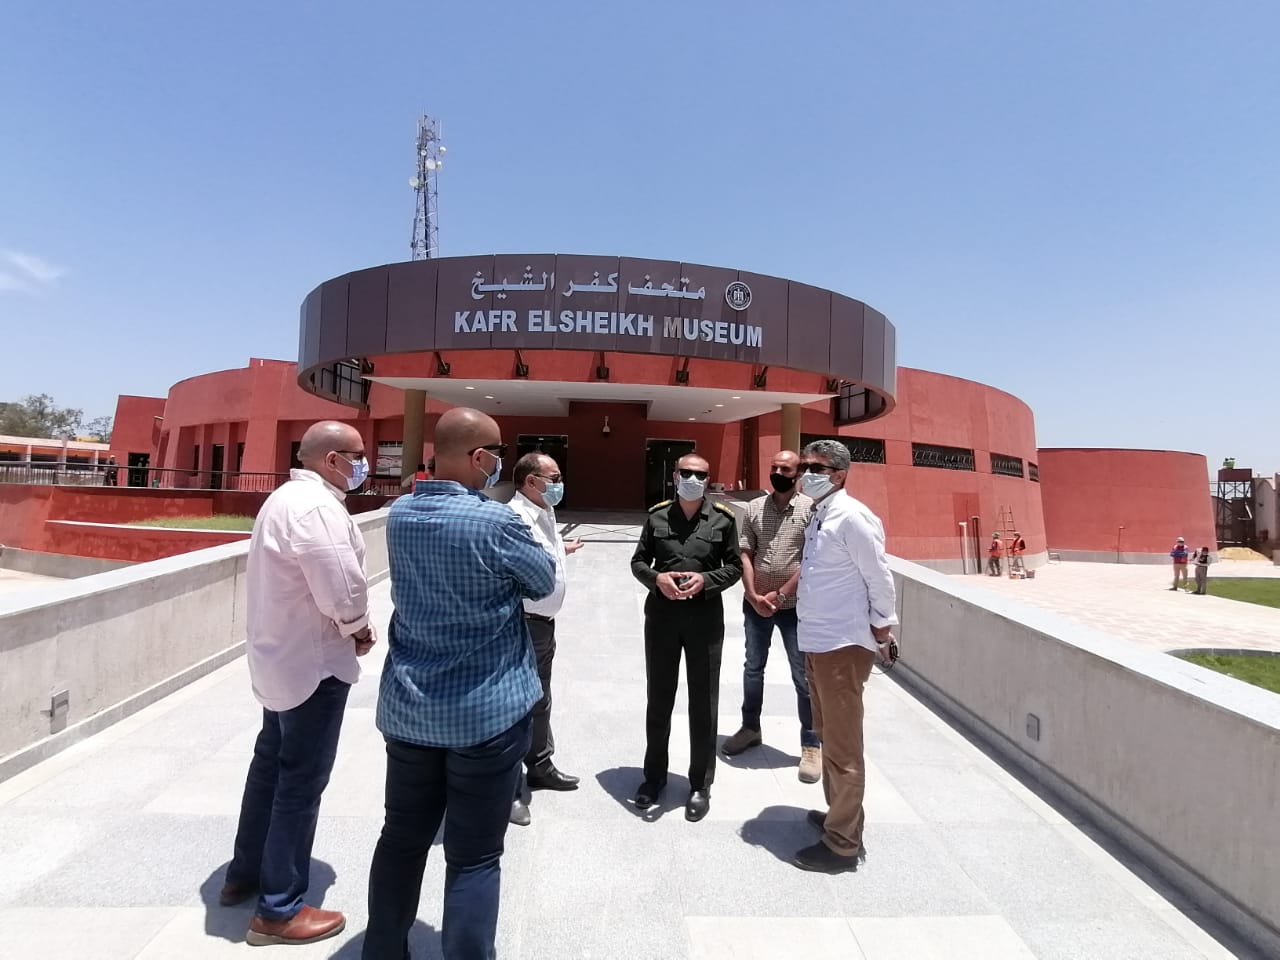   متحف كفر الشيخ يستقبل مجموعة من القطع الأثرية تمهيدا لافتتاحه